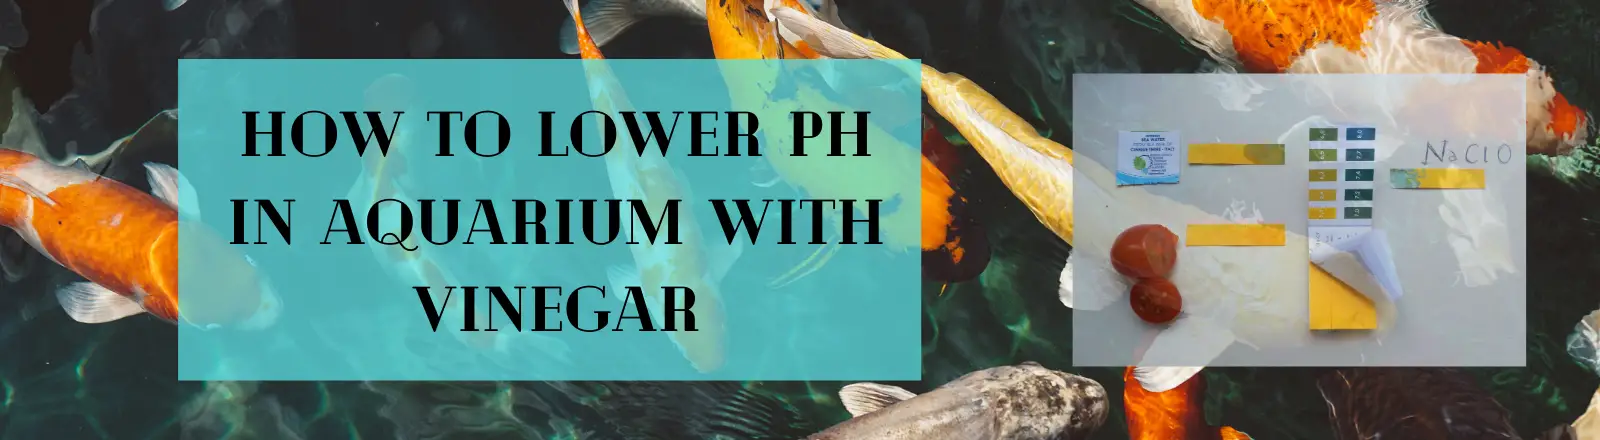 How to Lower pH in Aquarium with vinegar?